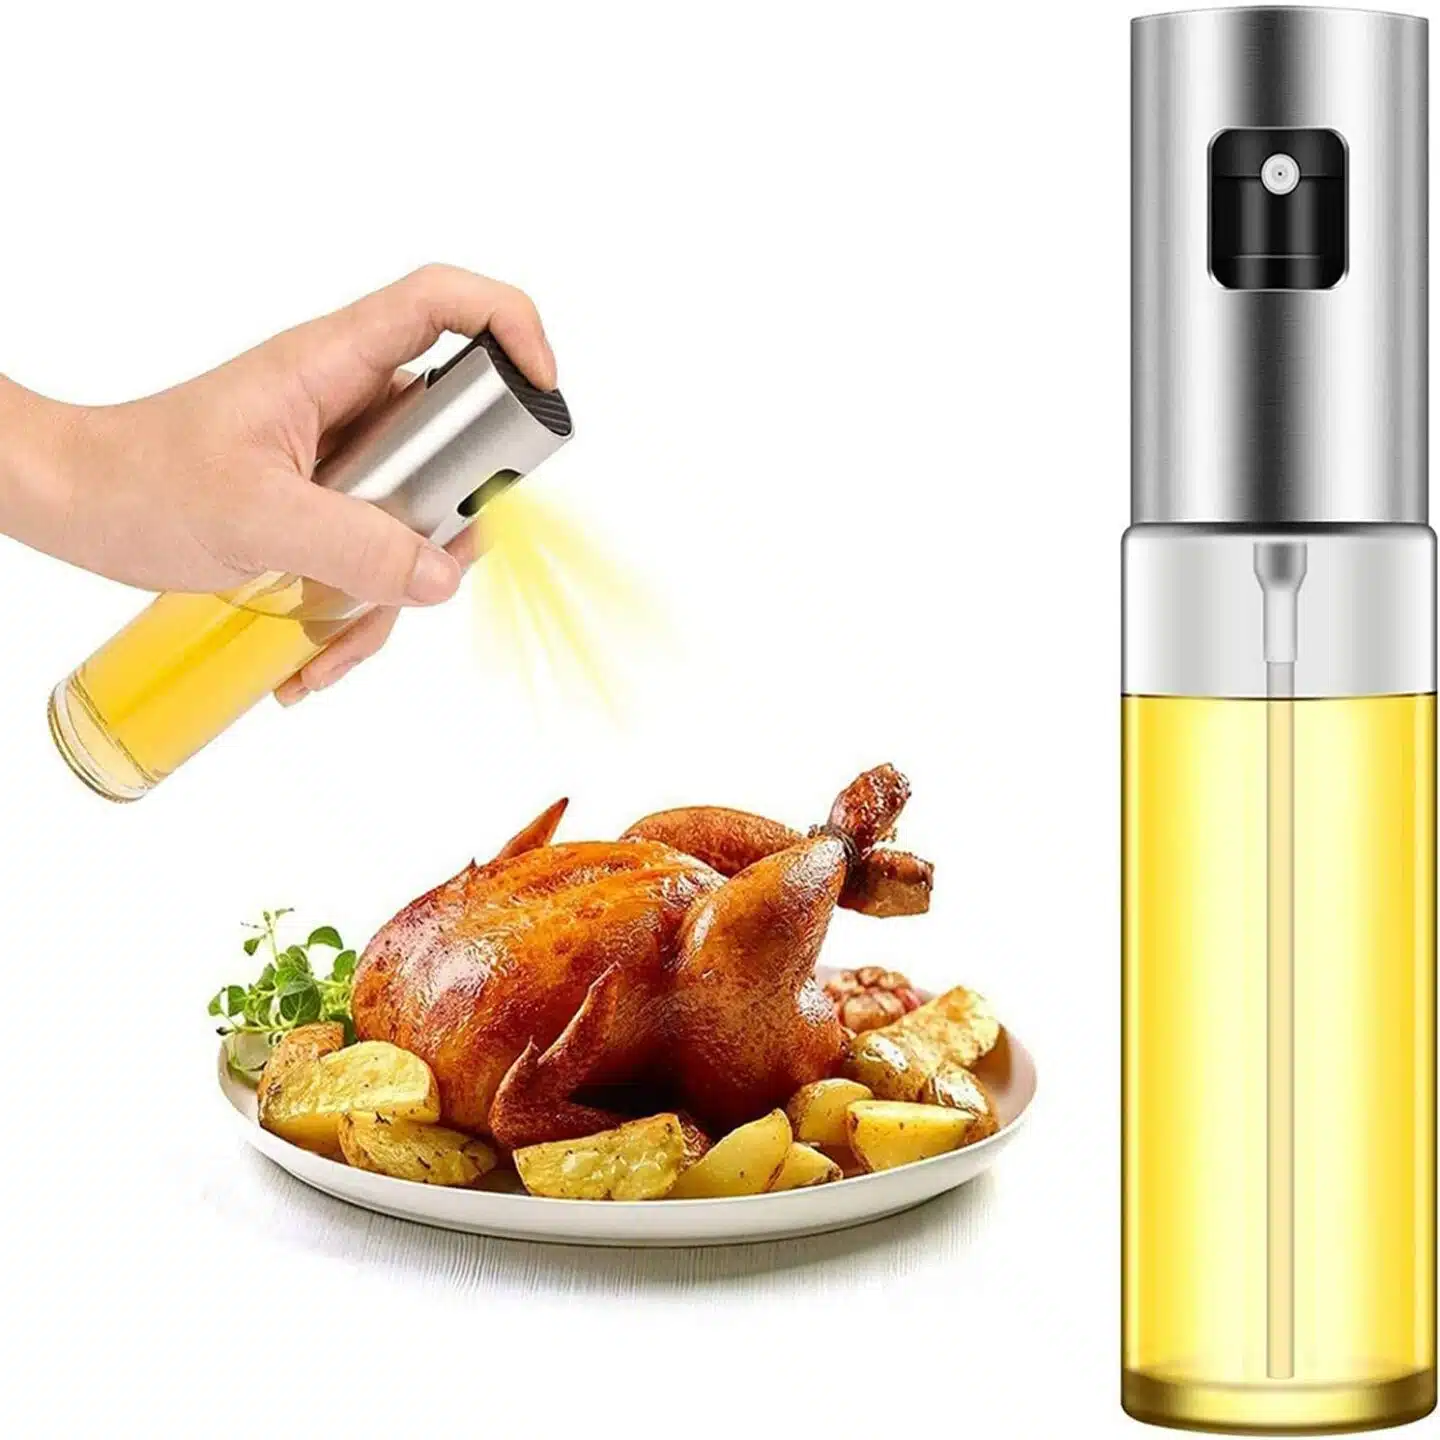 olive oil sprayer cooking oil alternative amazon kitchen gadget